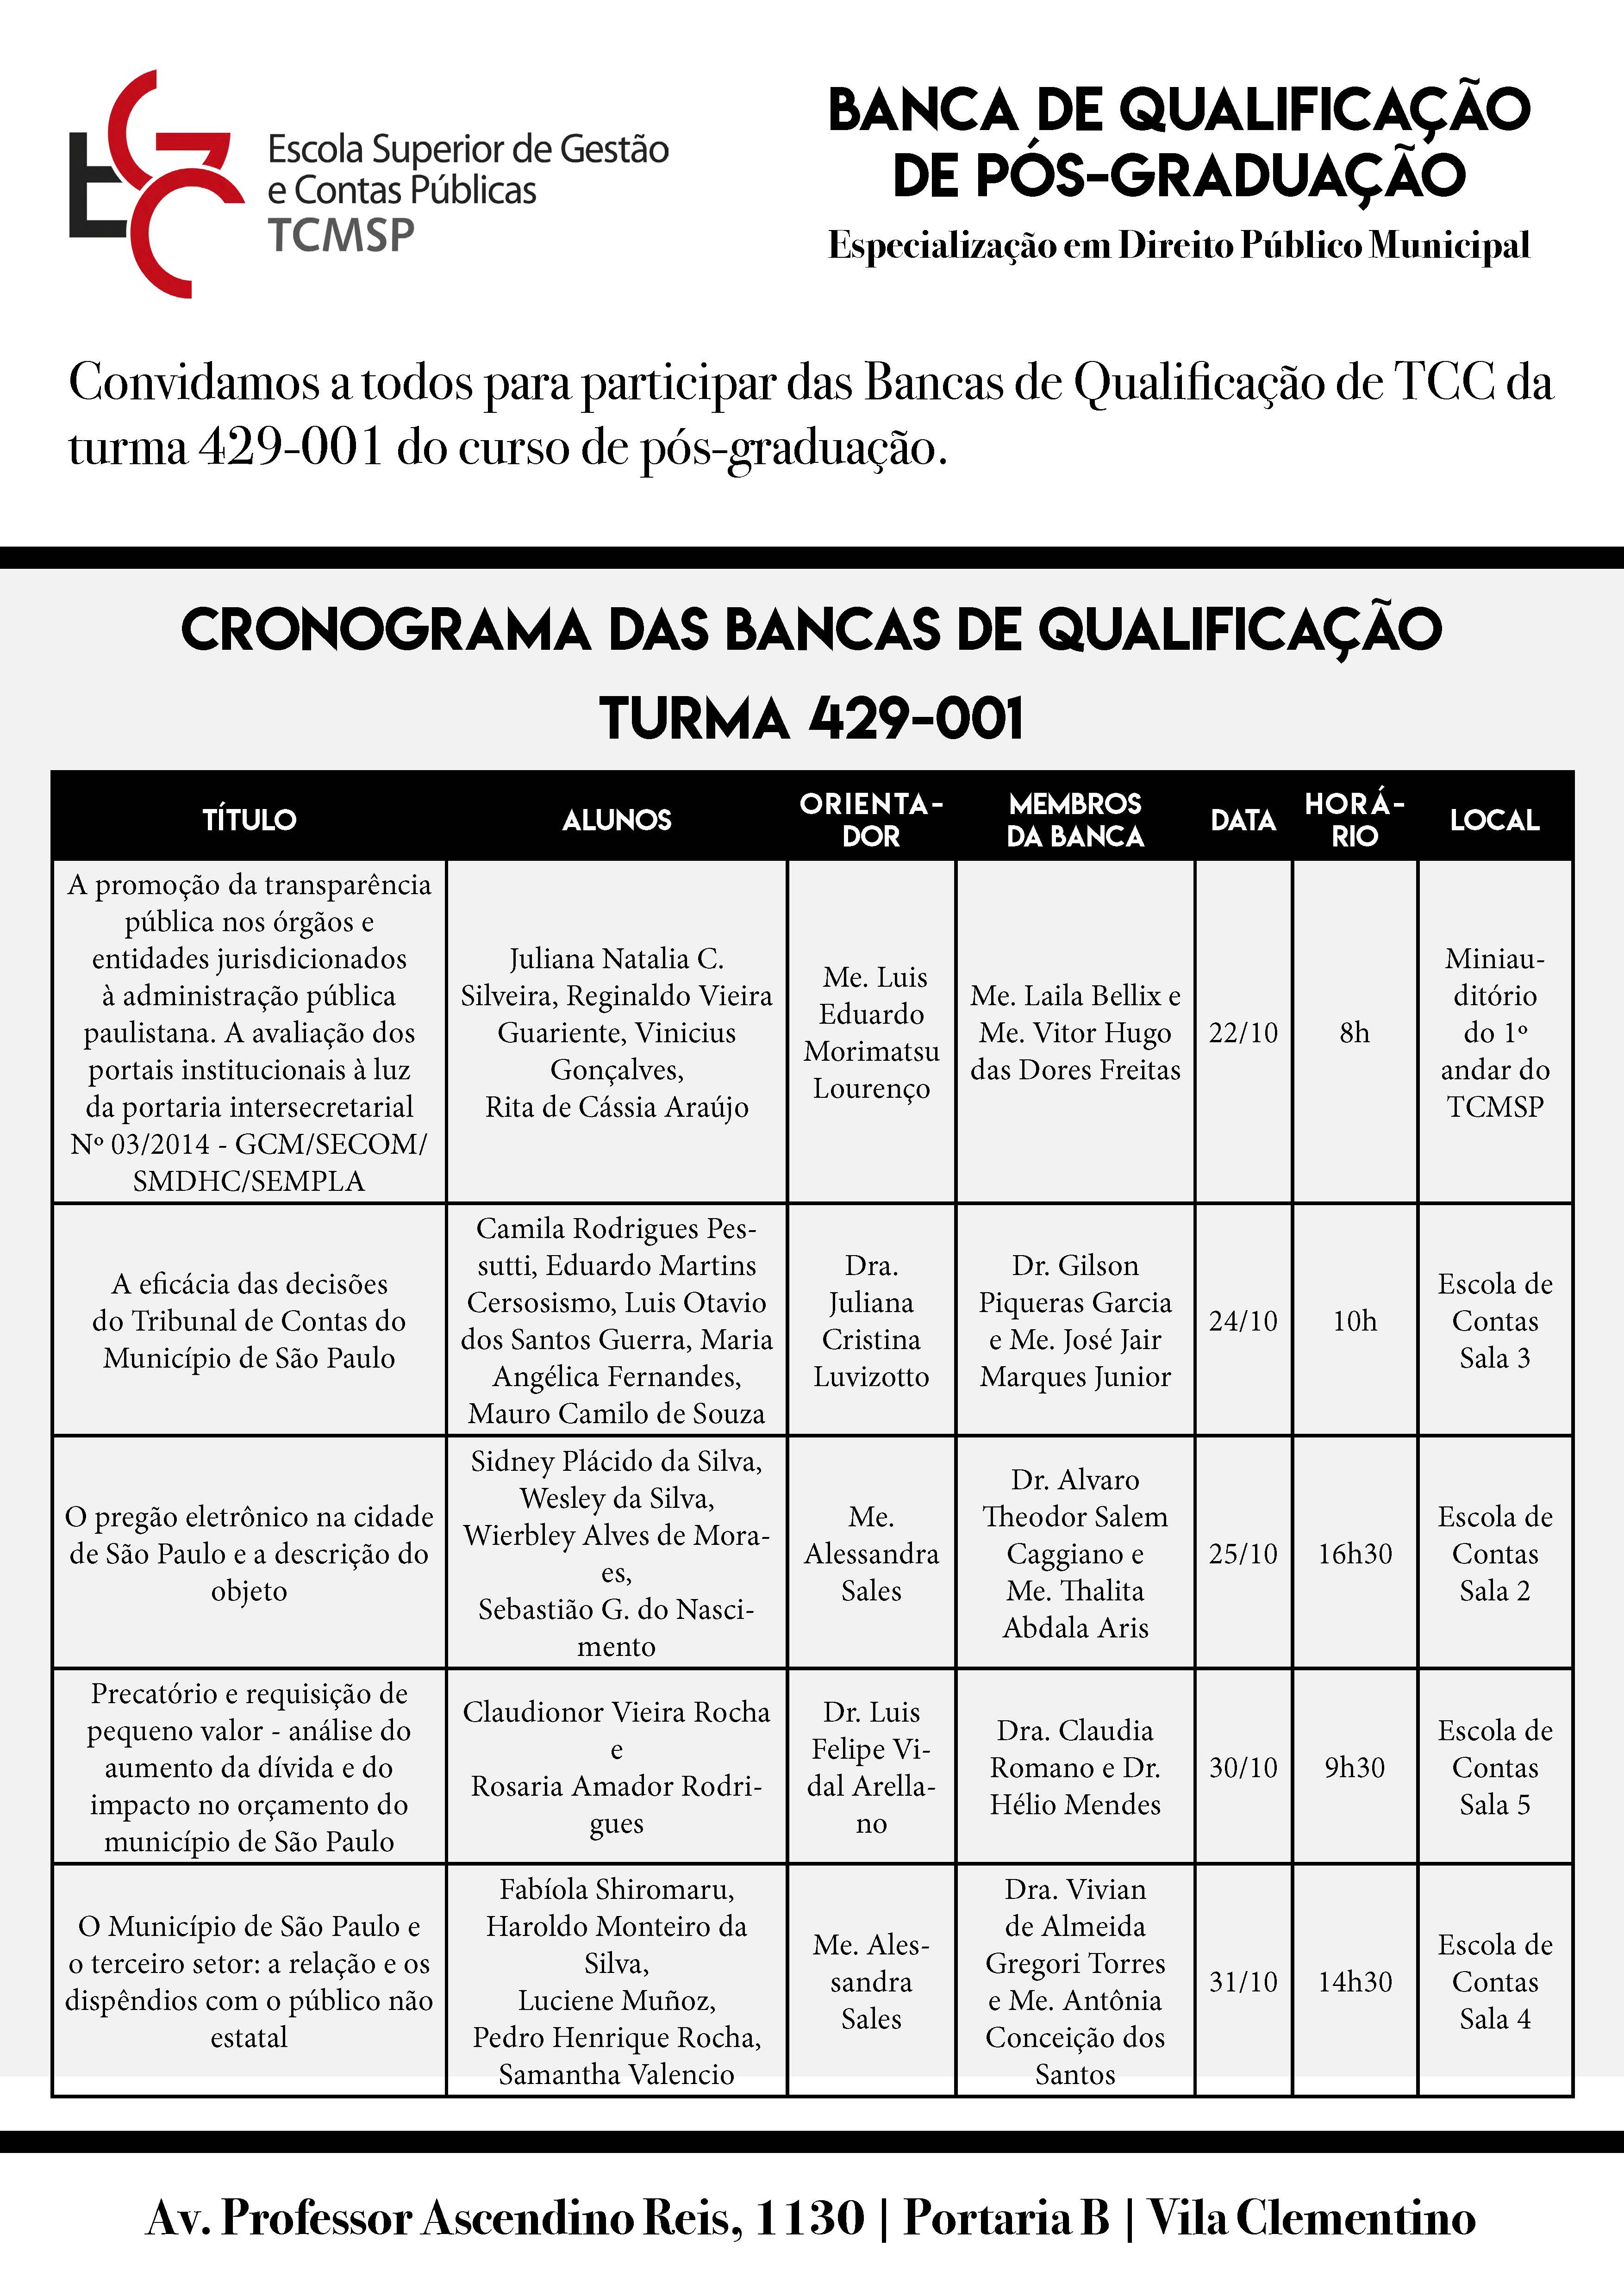 qualificacao TCC 2019